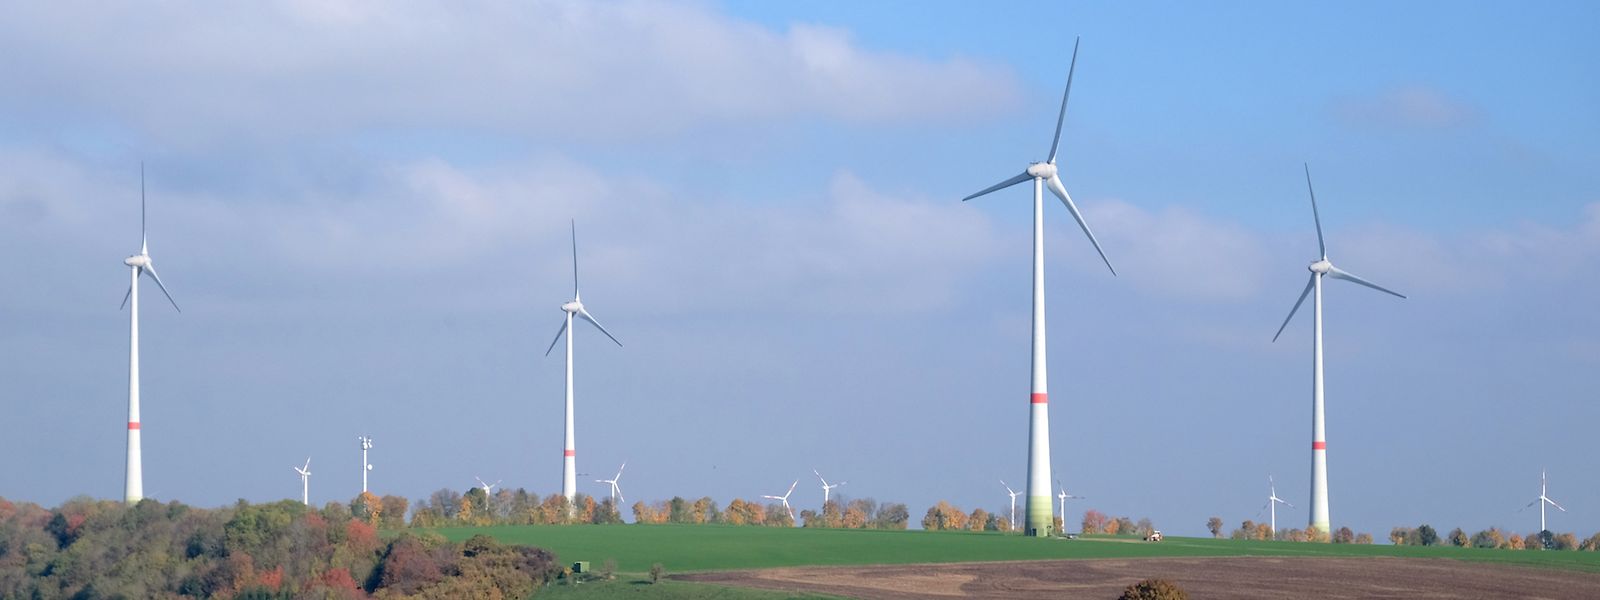 Windpark in Luxemburg. Weil das Wissen oft noch fehlt, legen auch nur wenige Luxemburger ihr Geld nachhaltig an.